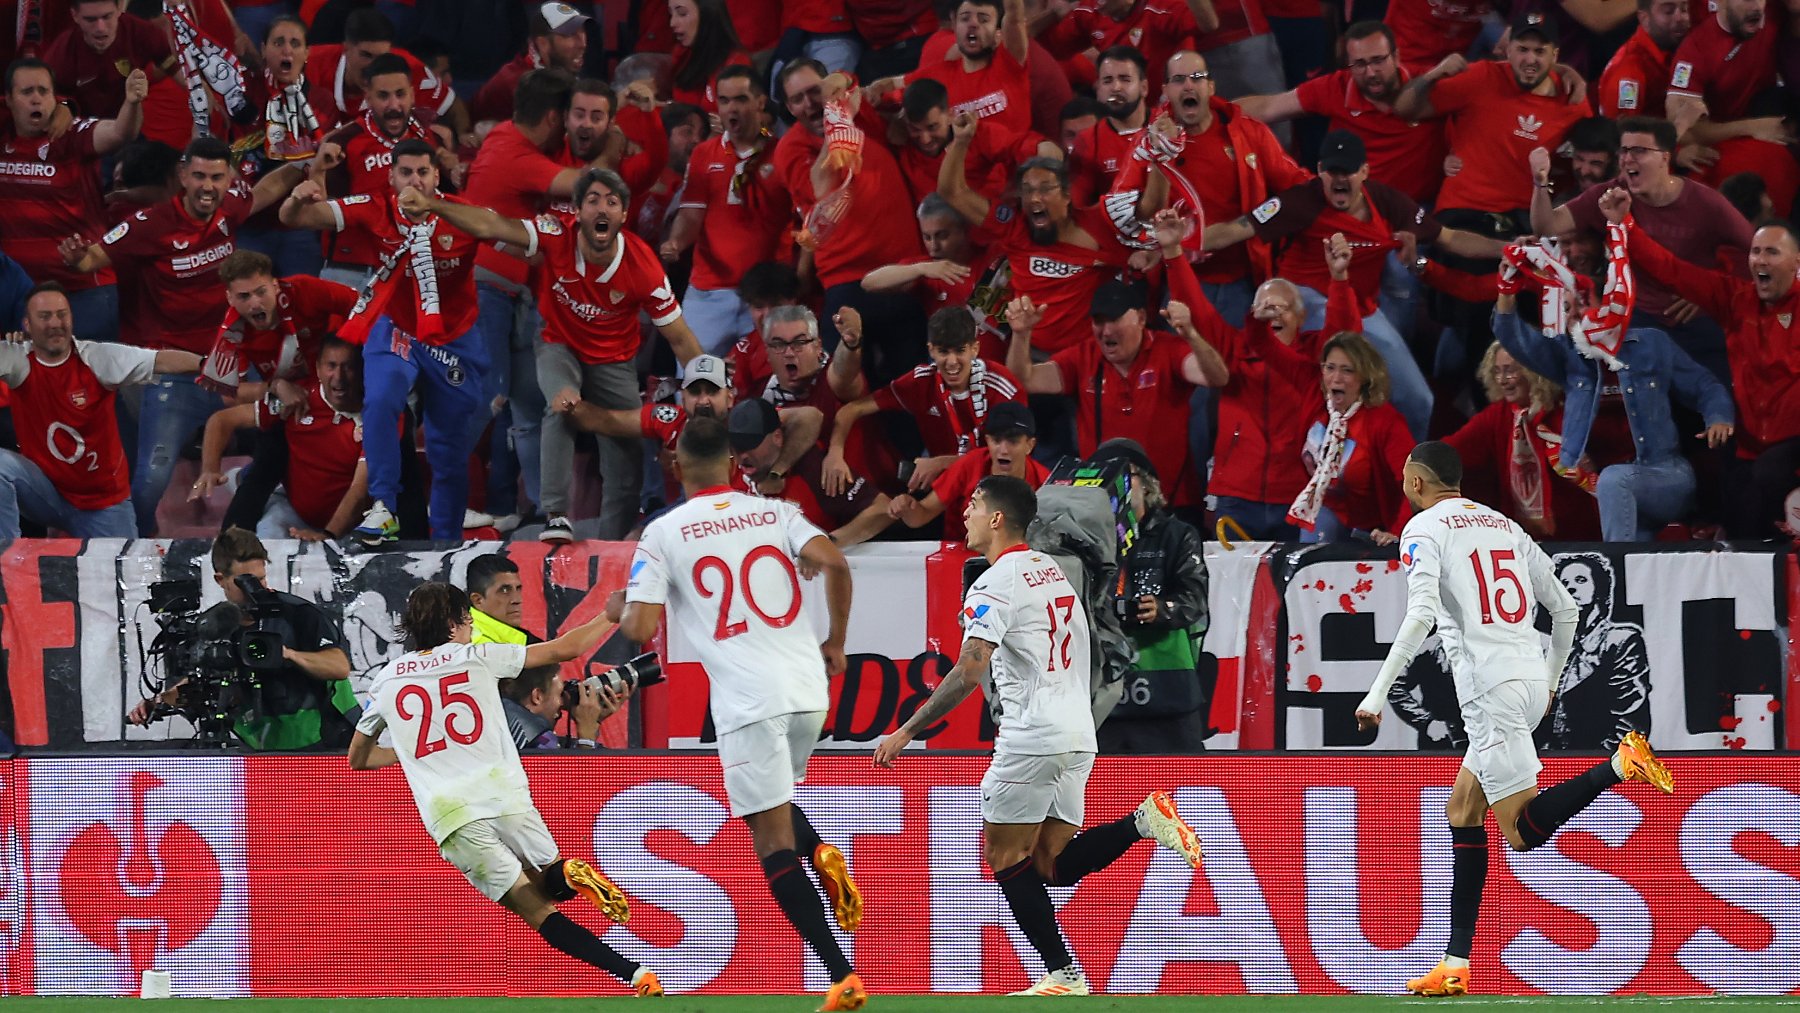 Jugadores del Sevilla celebrando un gol con su afición. (Getty)